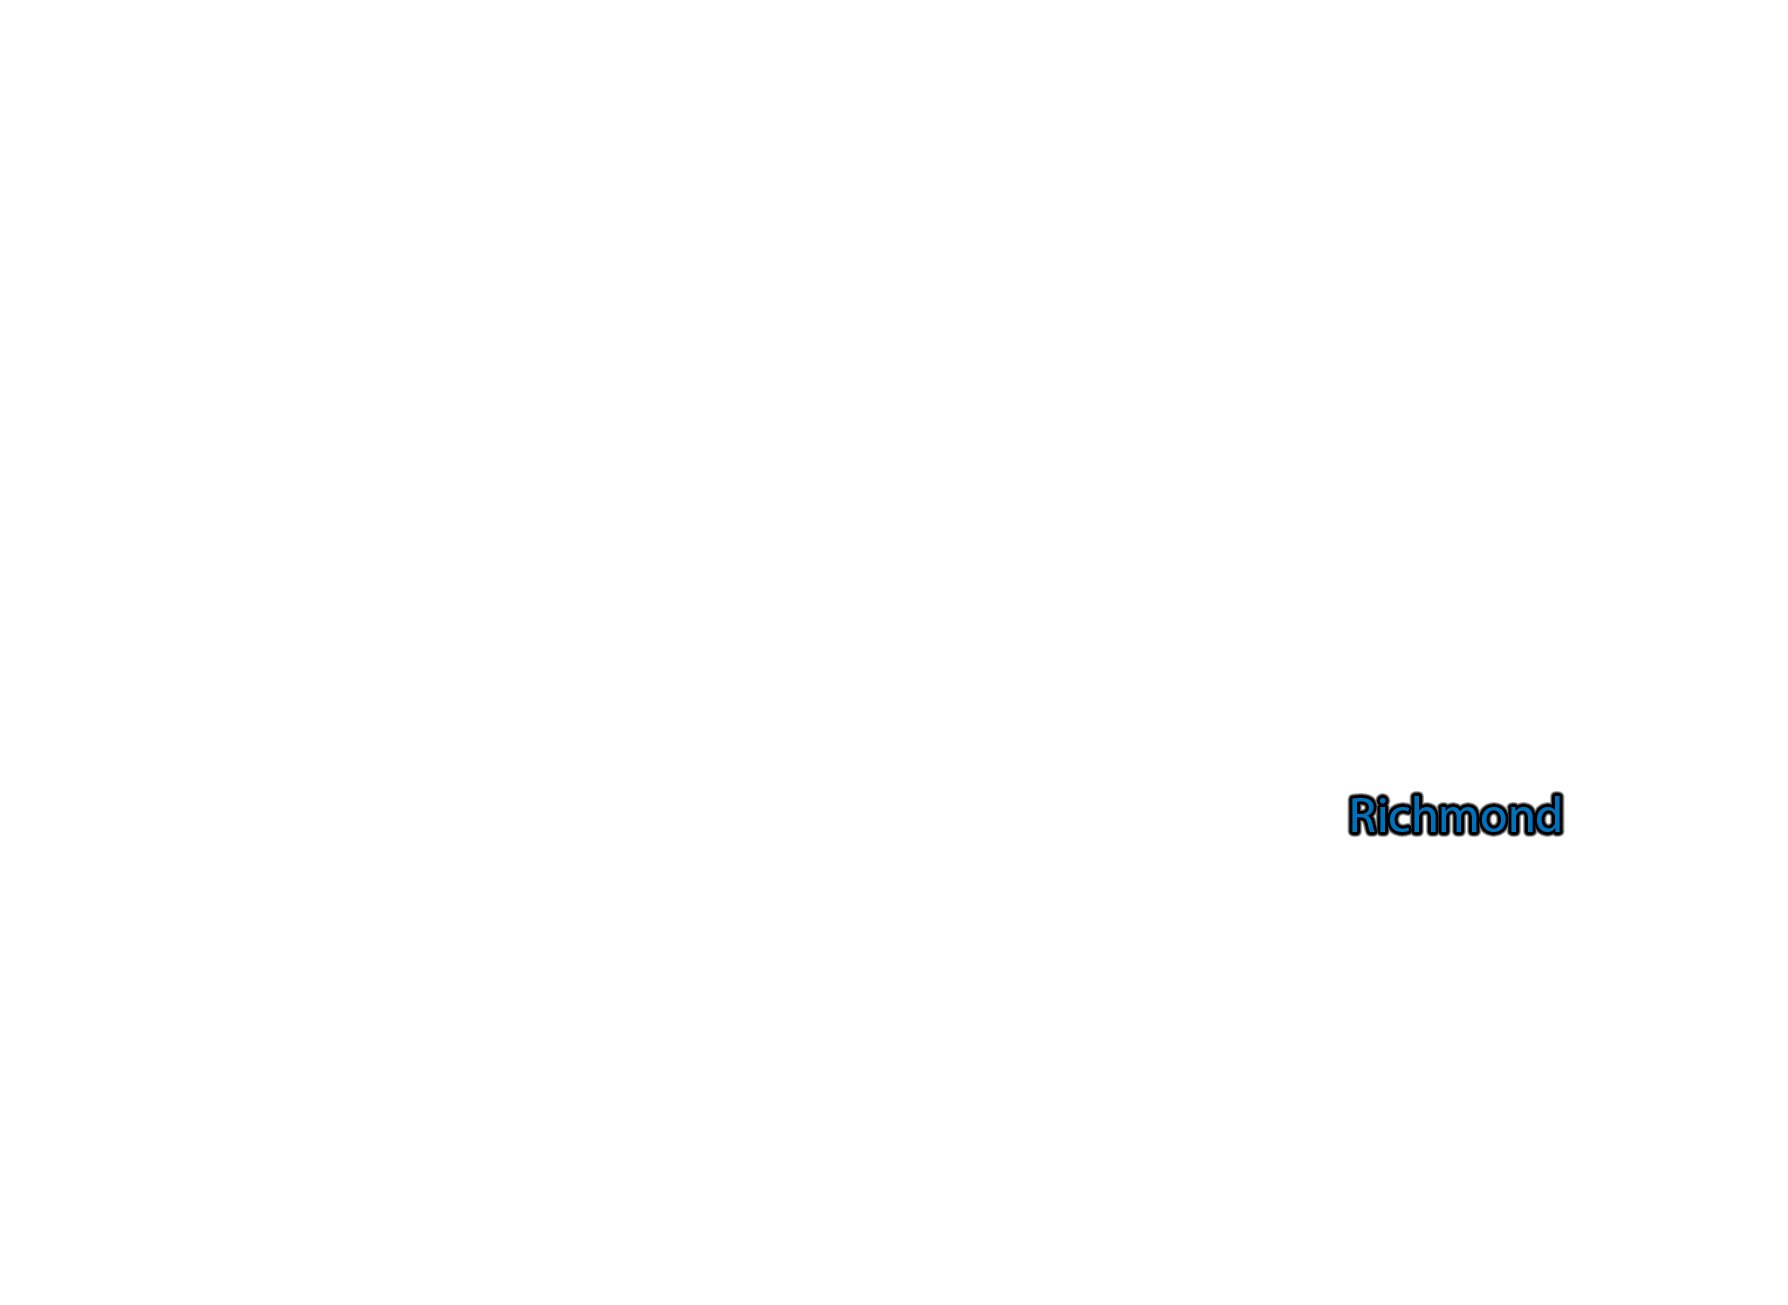 Richmond label with glow